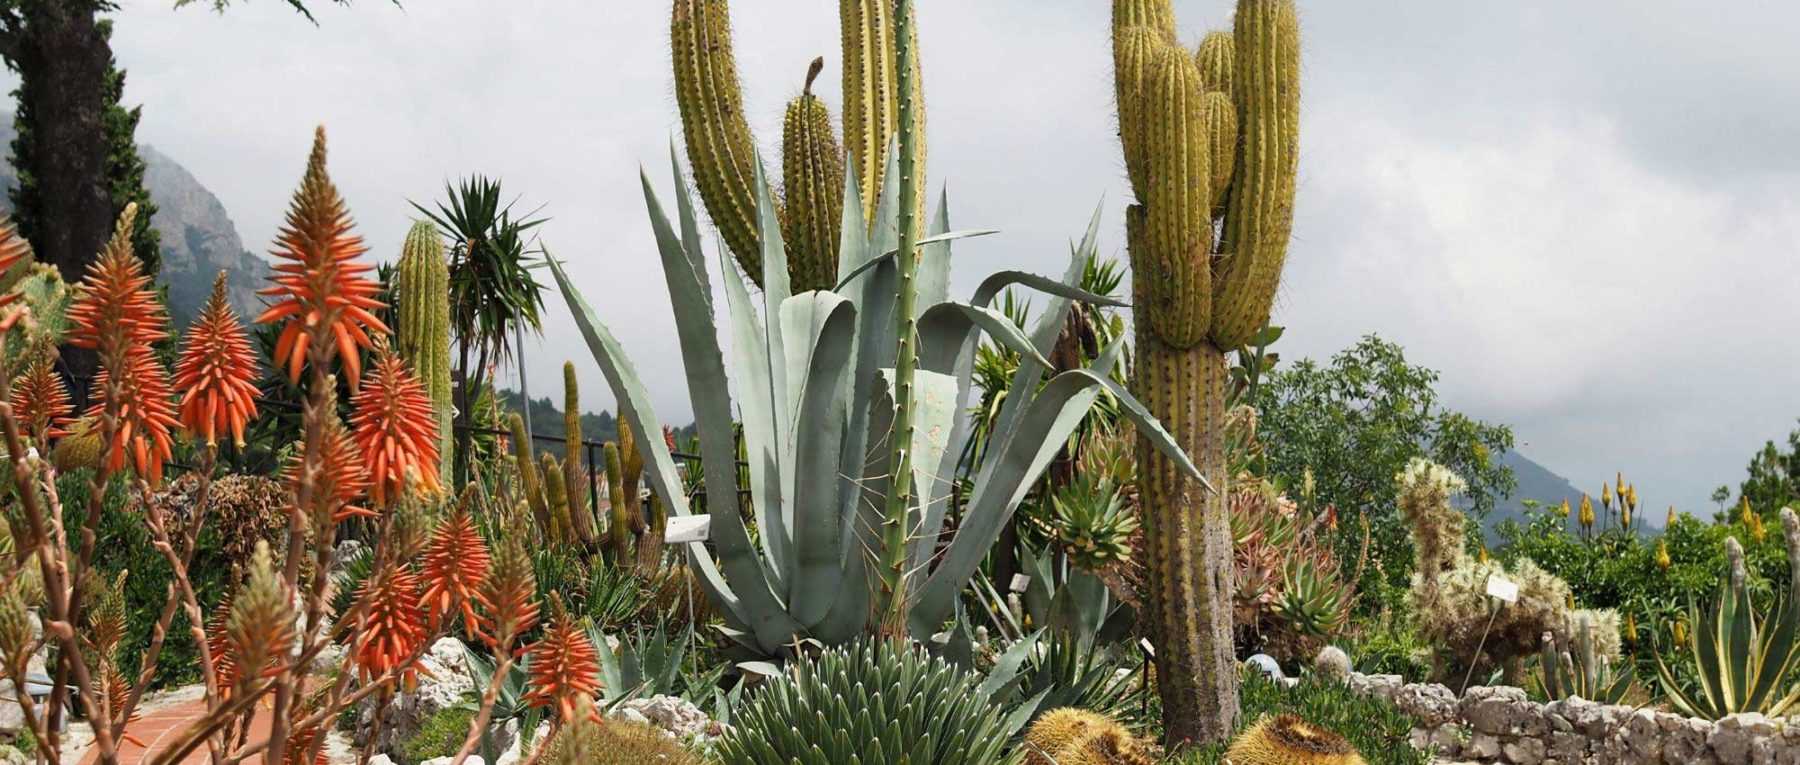 Jardinière extérieure cactus - Vente de cactus et plantes grasses